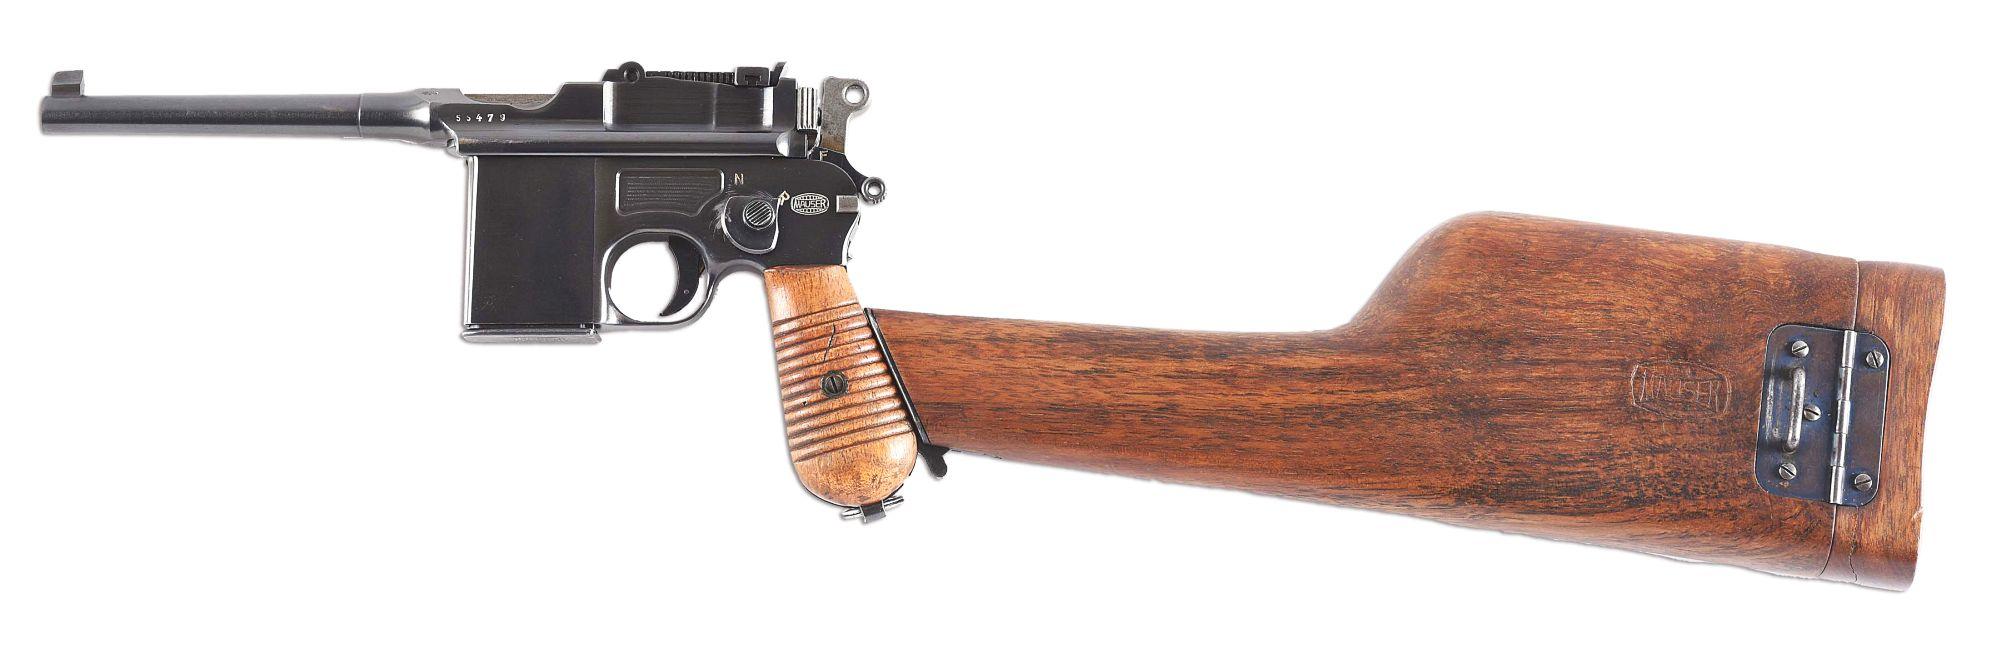 (N) Utterly Fantastic Original Condition Rare Mauser Broomhandle Model 712 Schnellfeuer Machine Gun